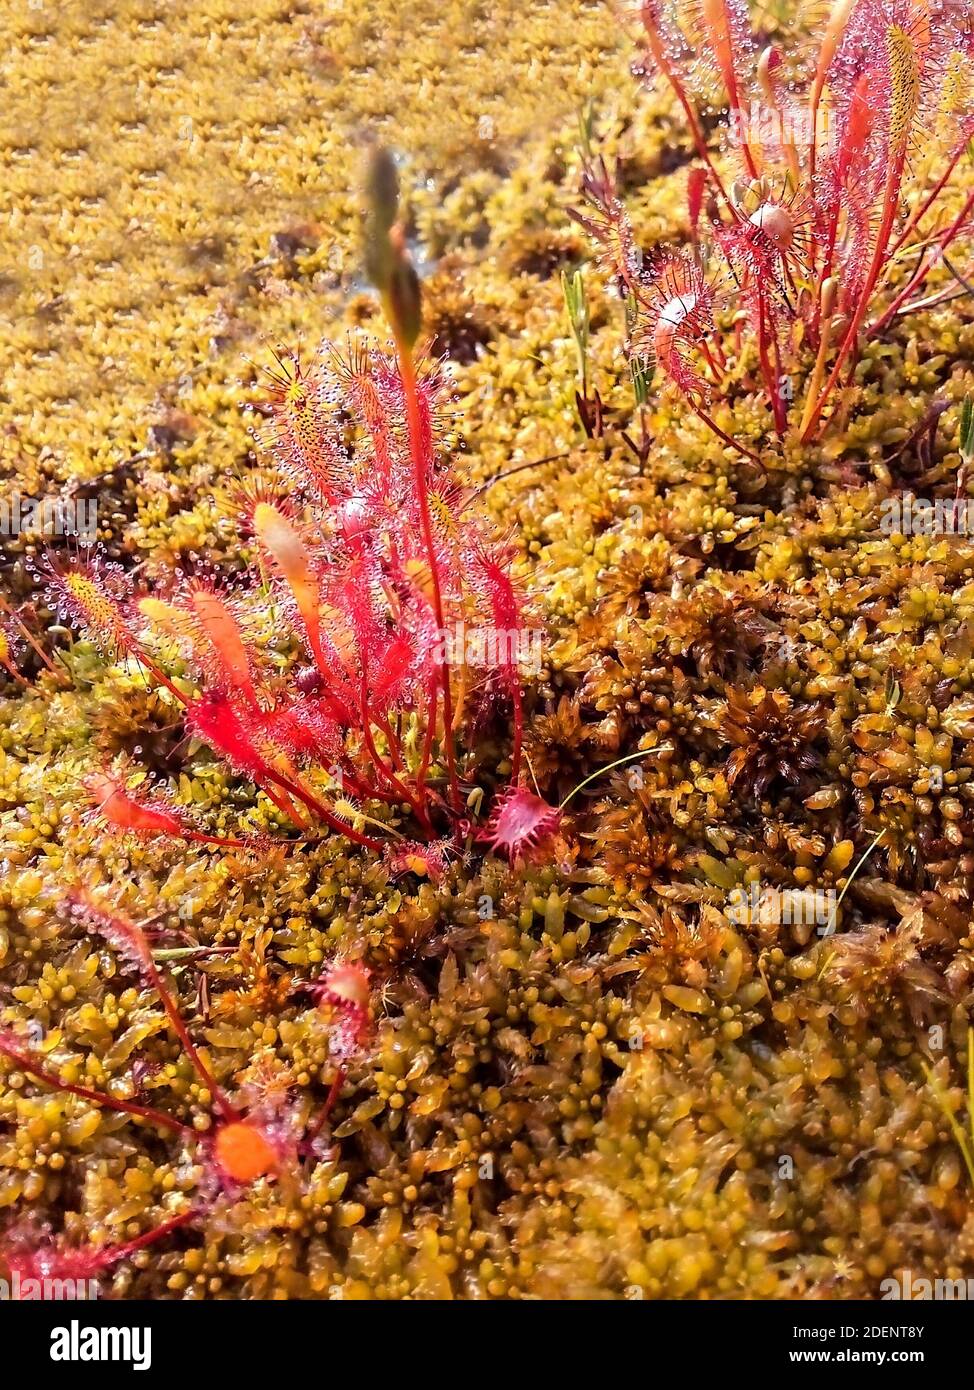 Plante carnivore Drosera anglica, sunduw anglais ou grand sunduw dans les gouttes de rosée qui poussent dans les tourbières de la taïga du nord. Gros plan, mise au point sélective Banque D'Images